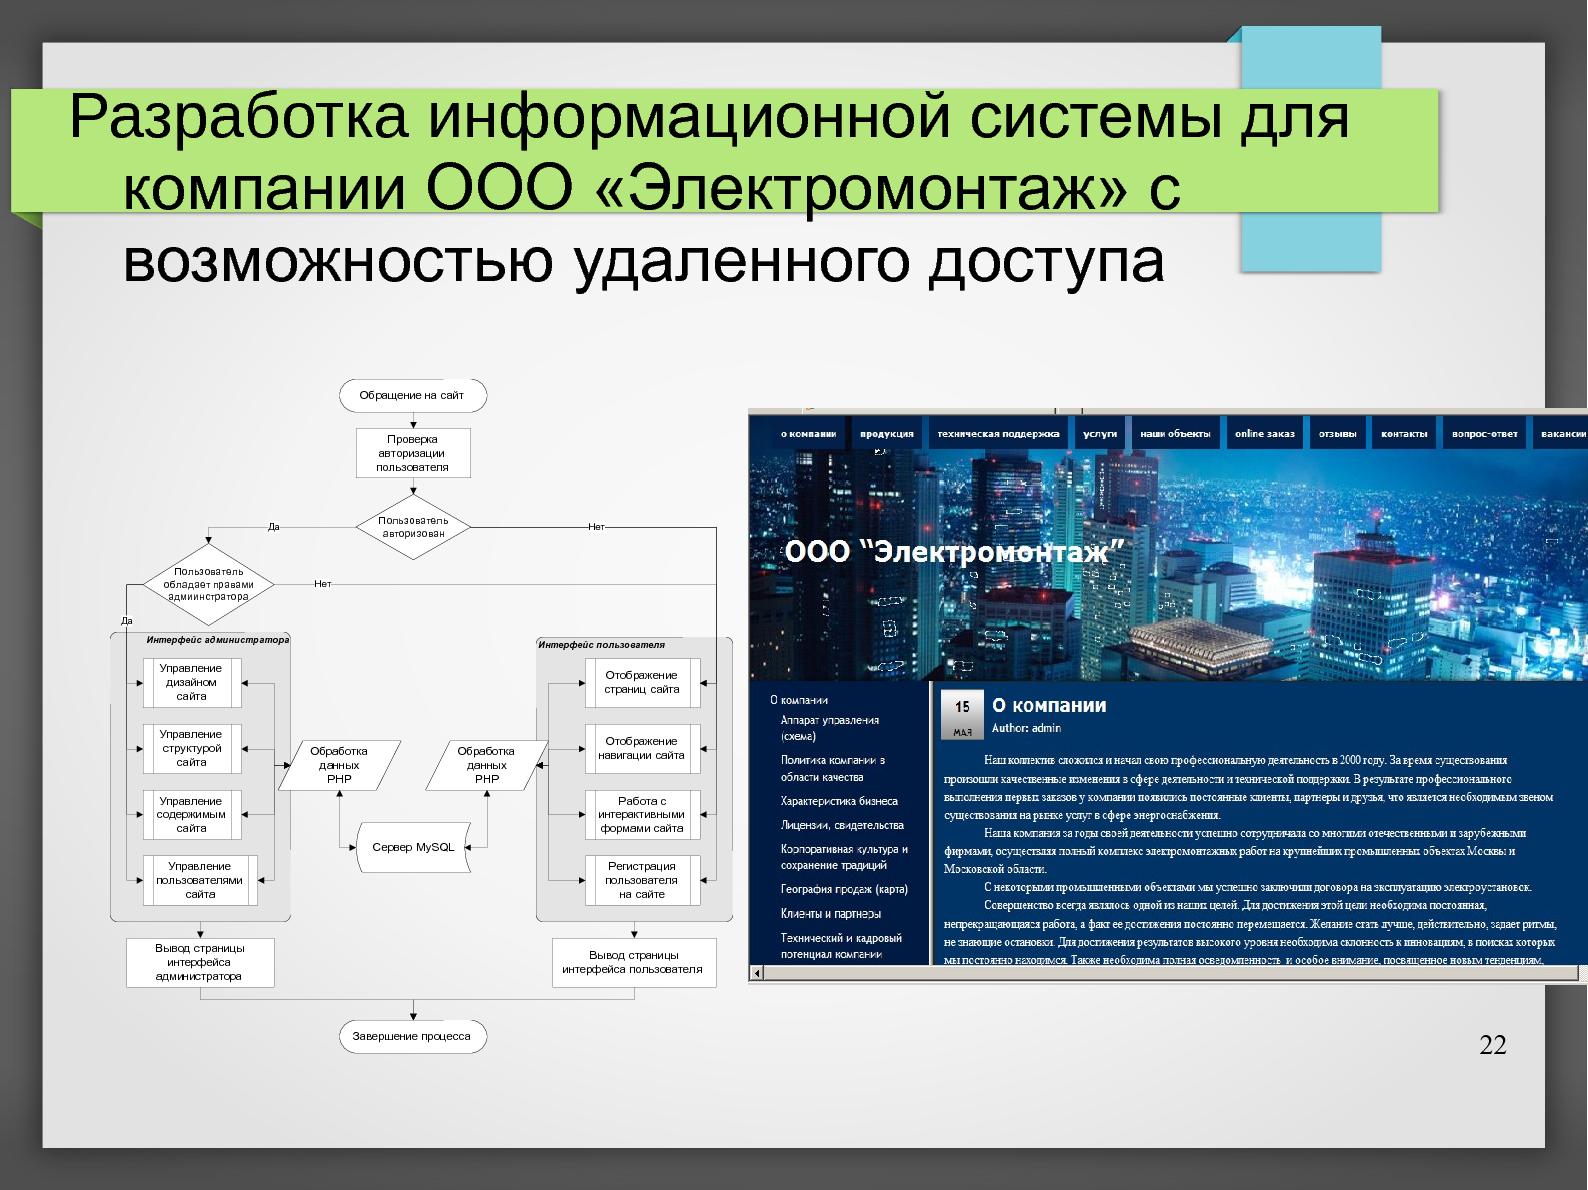 Файл:Дипломное проектирование на СПО (Владимир Симонов, OSEDUCONF-2013).pdf